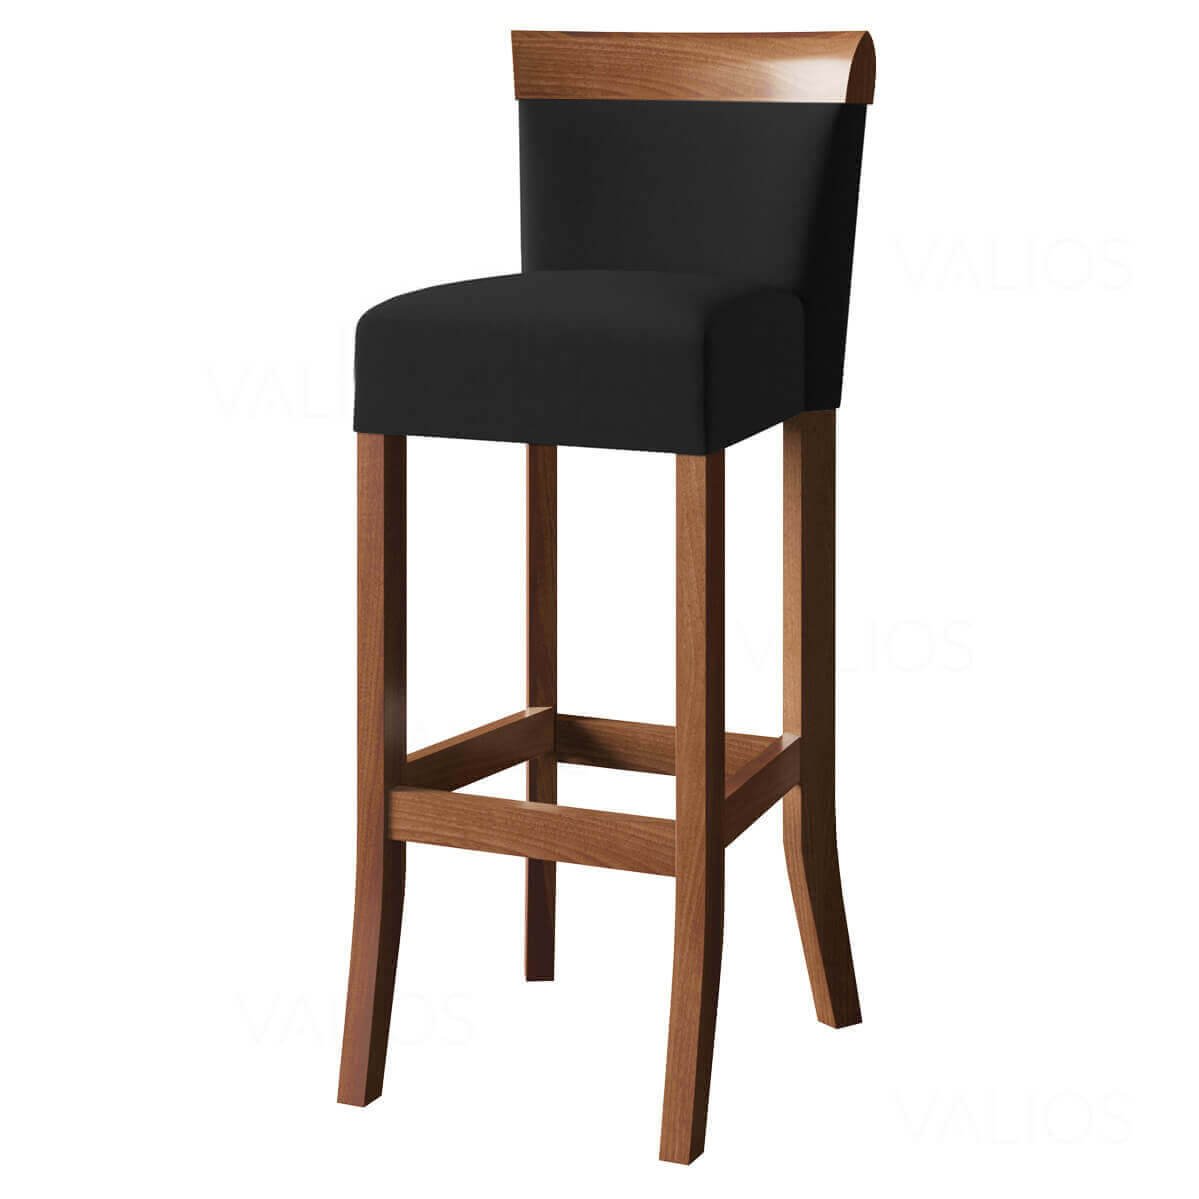 3 Banco alto cadeira de balcão restaurante cozinha gourmet moderna confortavel bistro premium Valios - 5